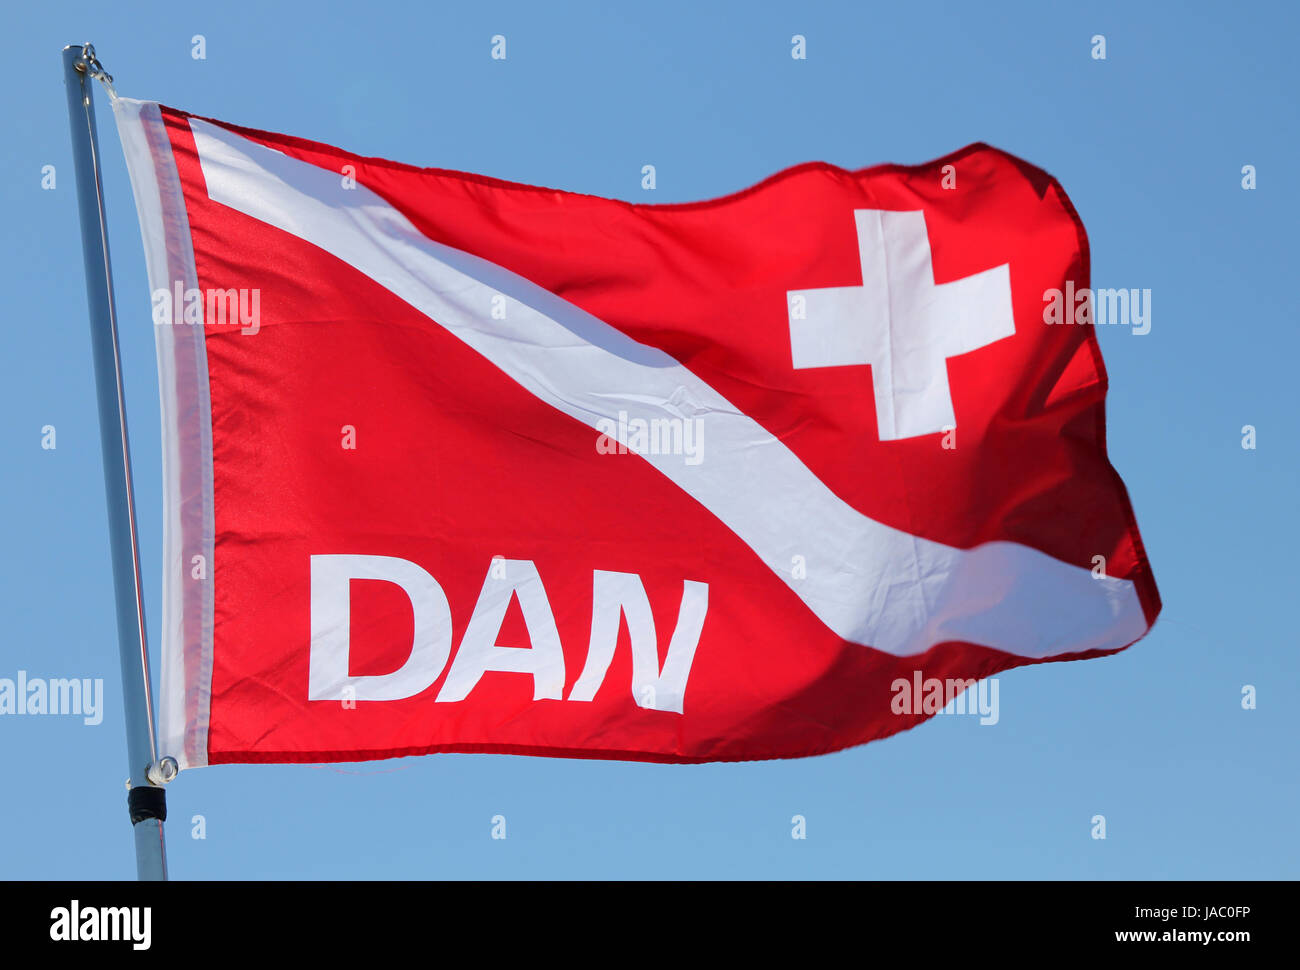 DAN divers warning flag Stock Photo